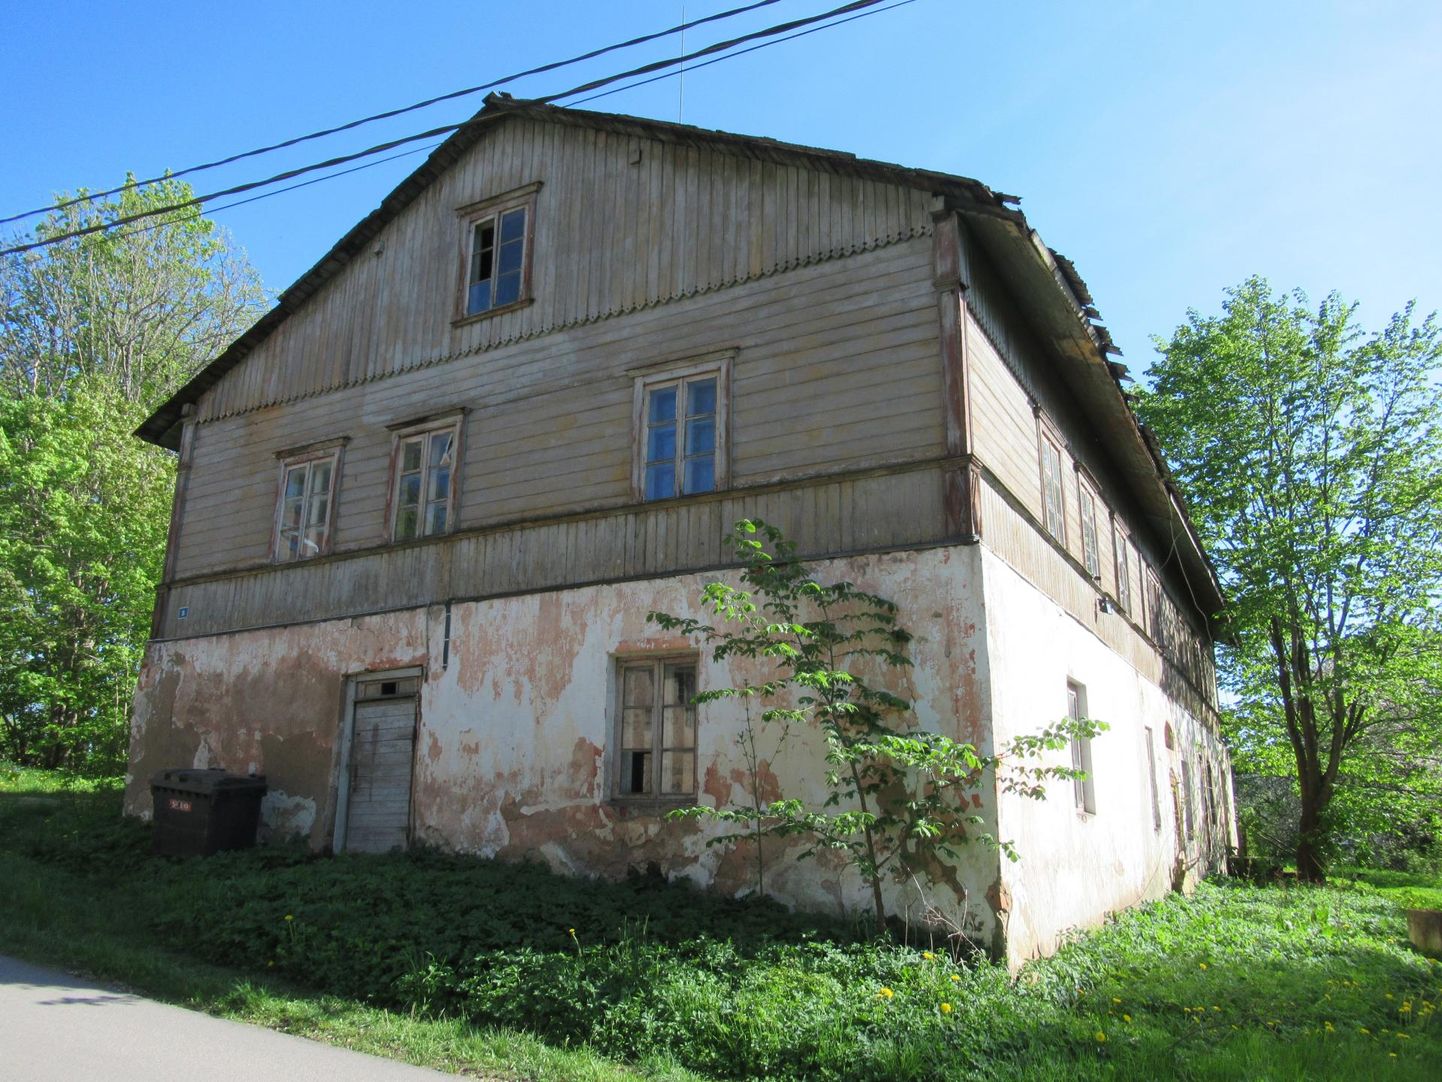 Voltveti mõisa moonakatele 1903. aastal ehitatud korter­maja on Saarde valla bilansis.